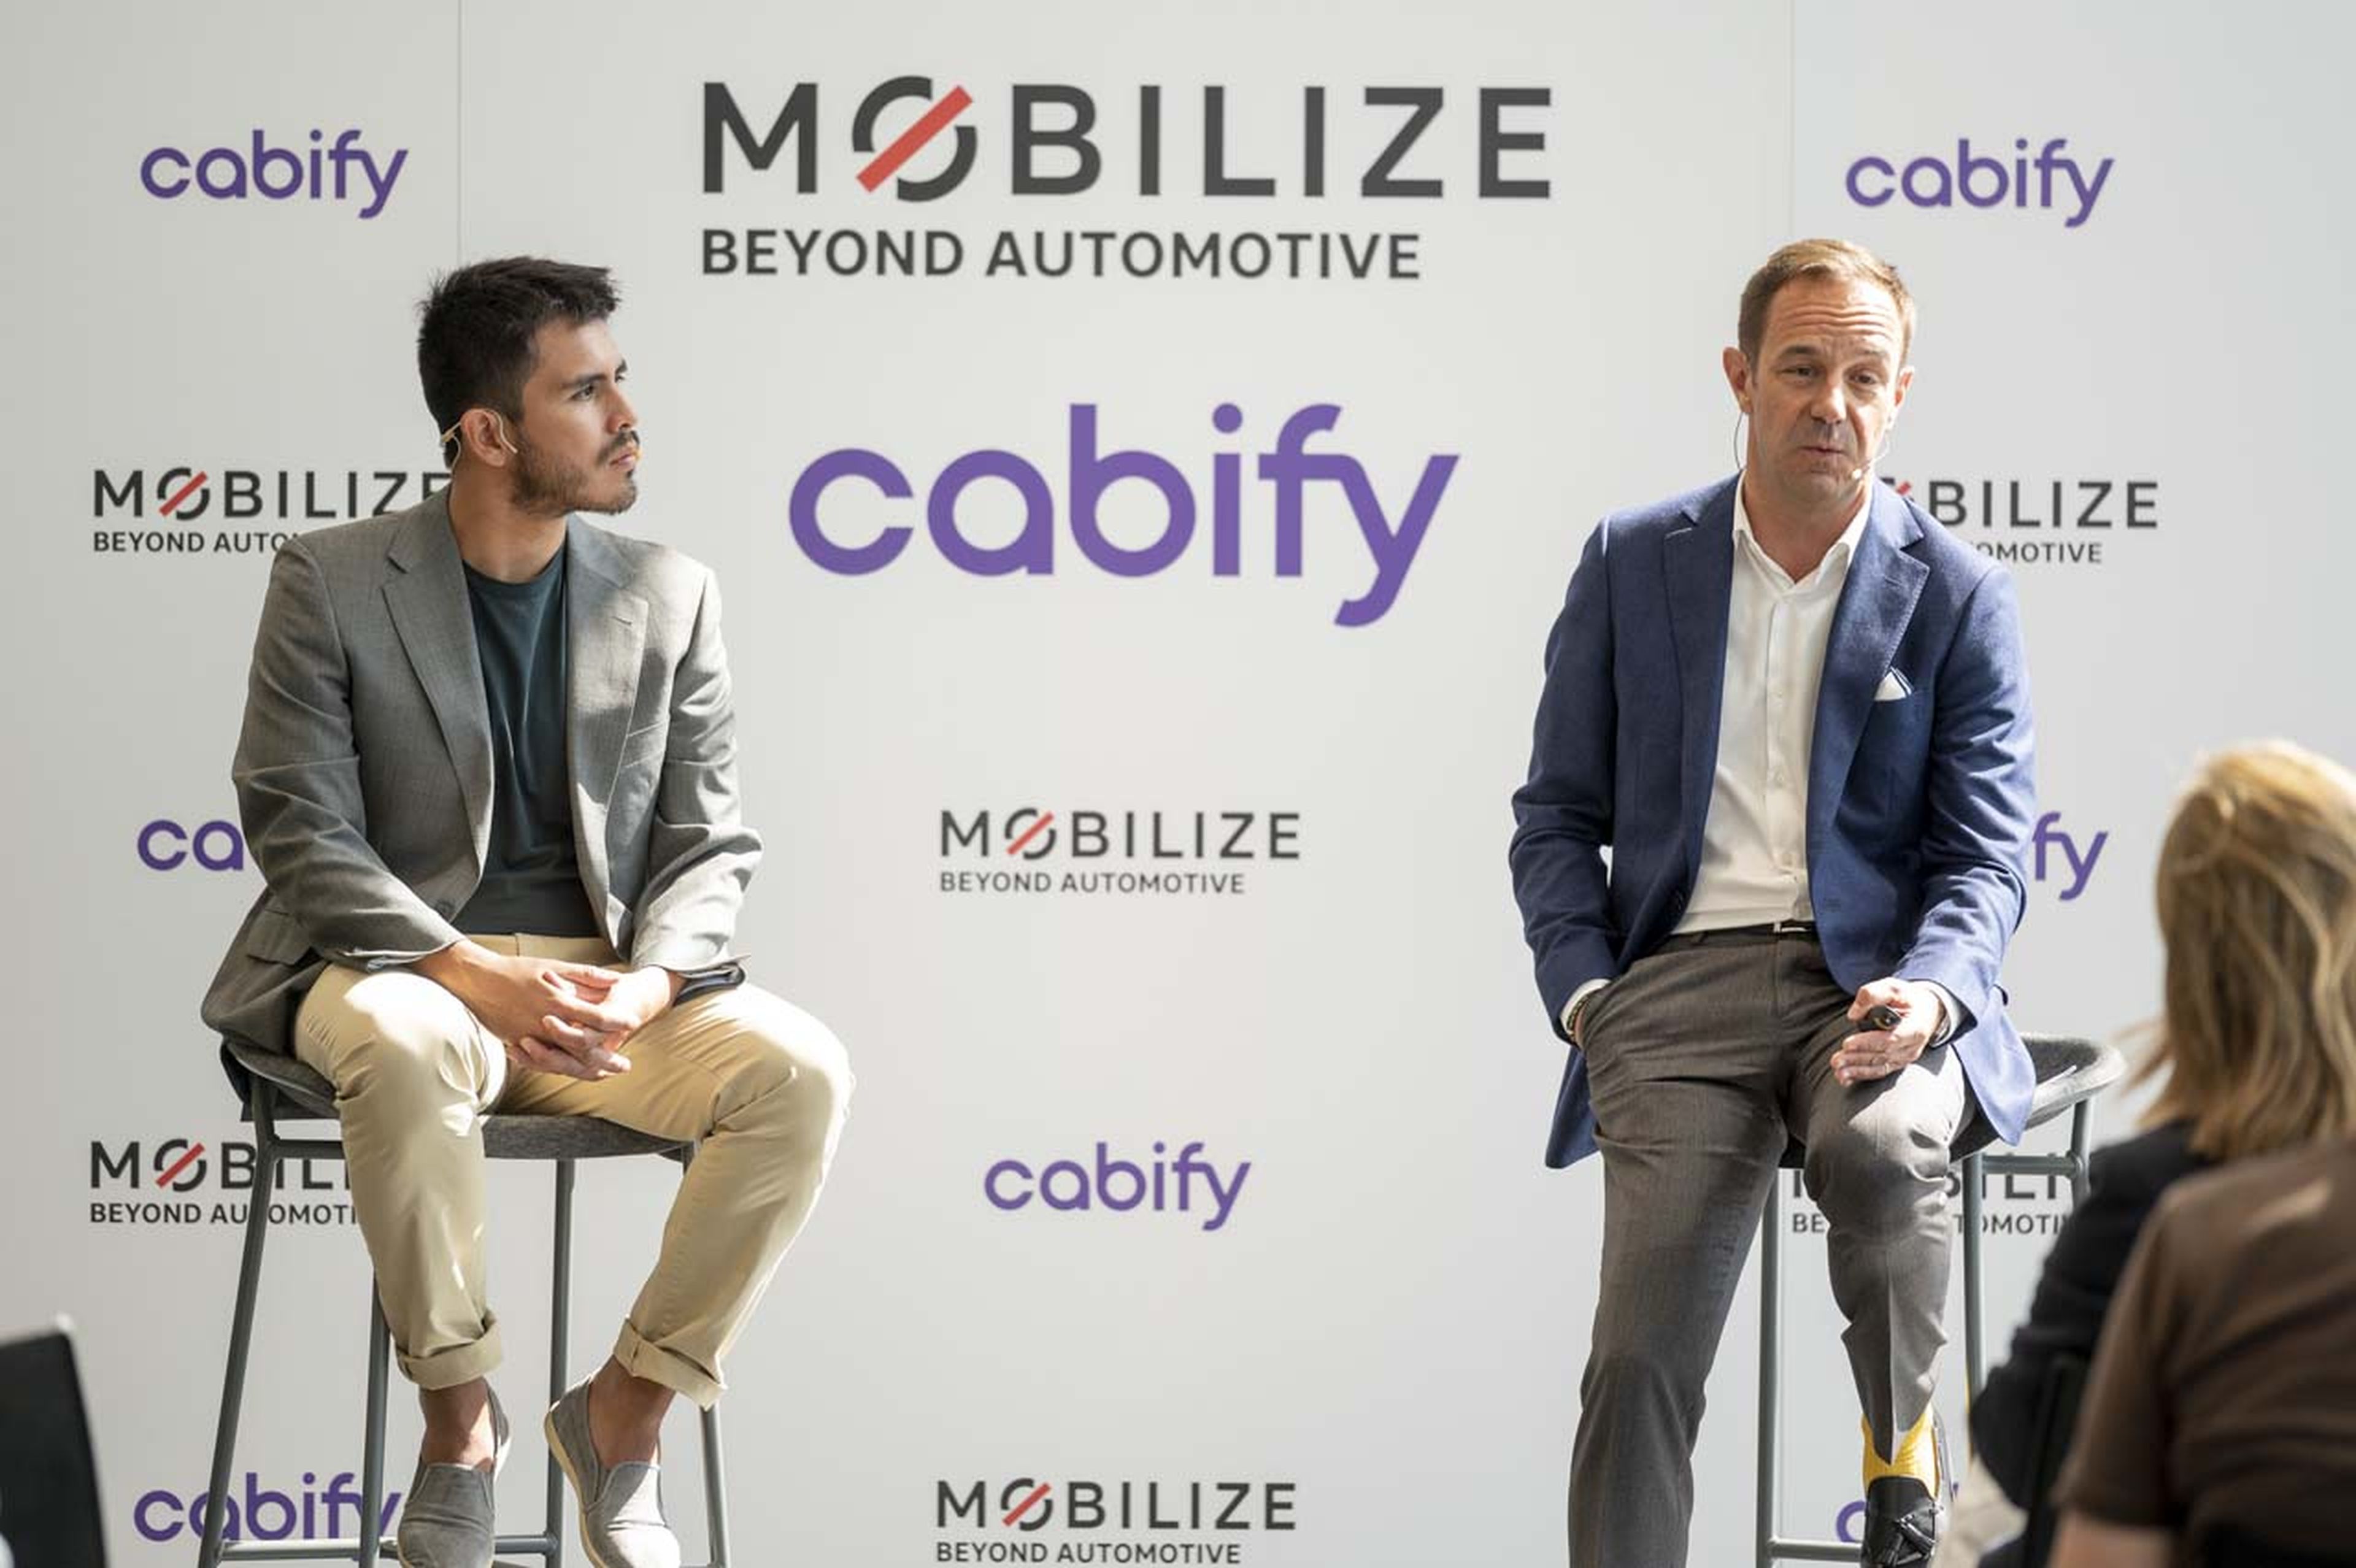 Acuerdo entre Mobilize y Cabify